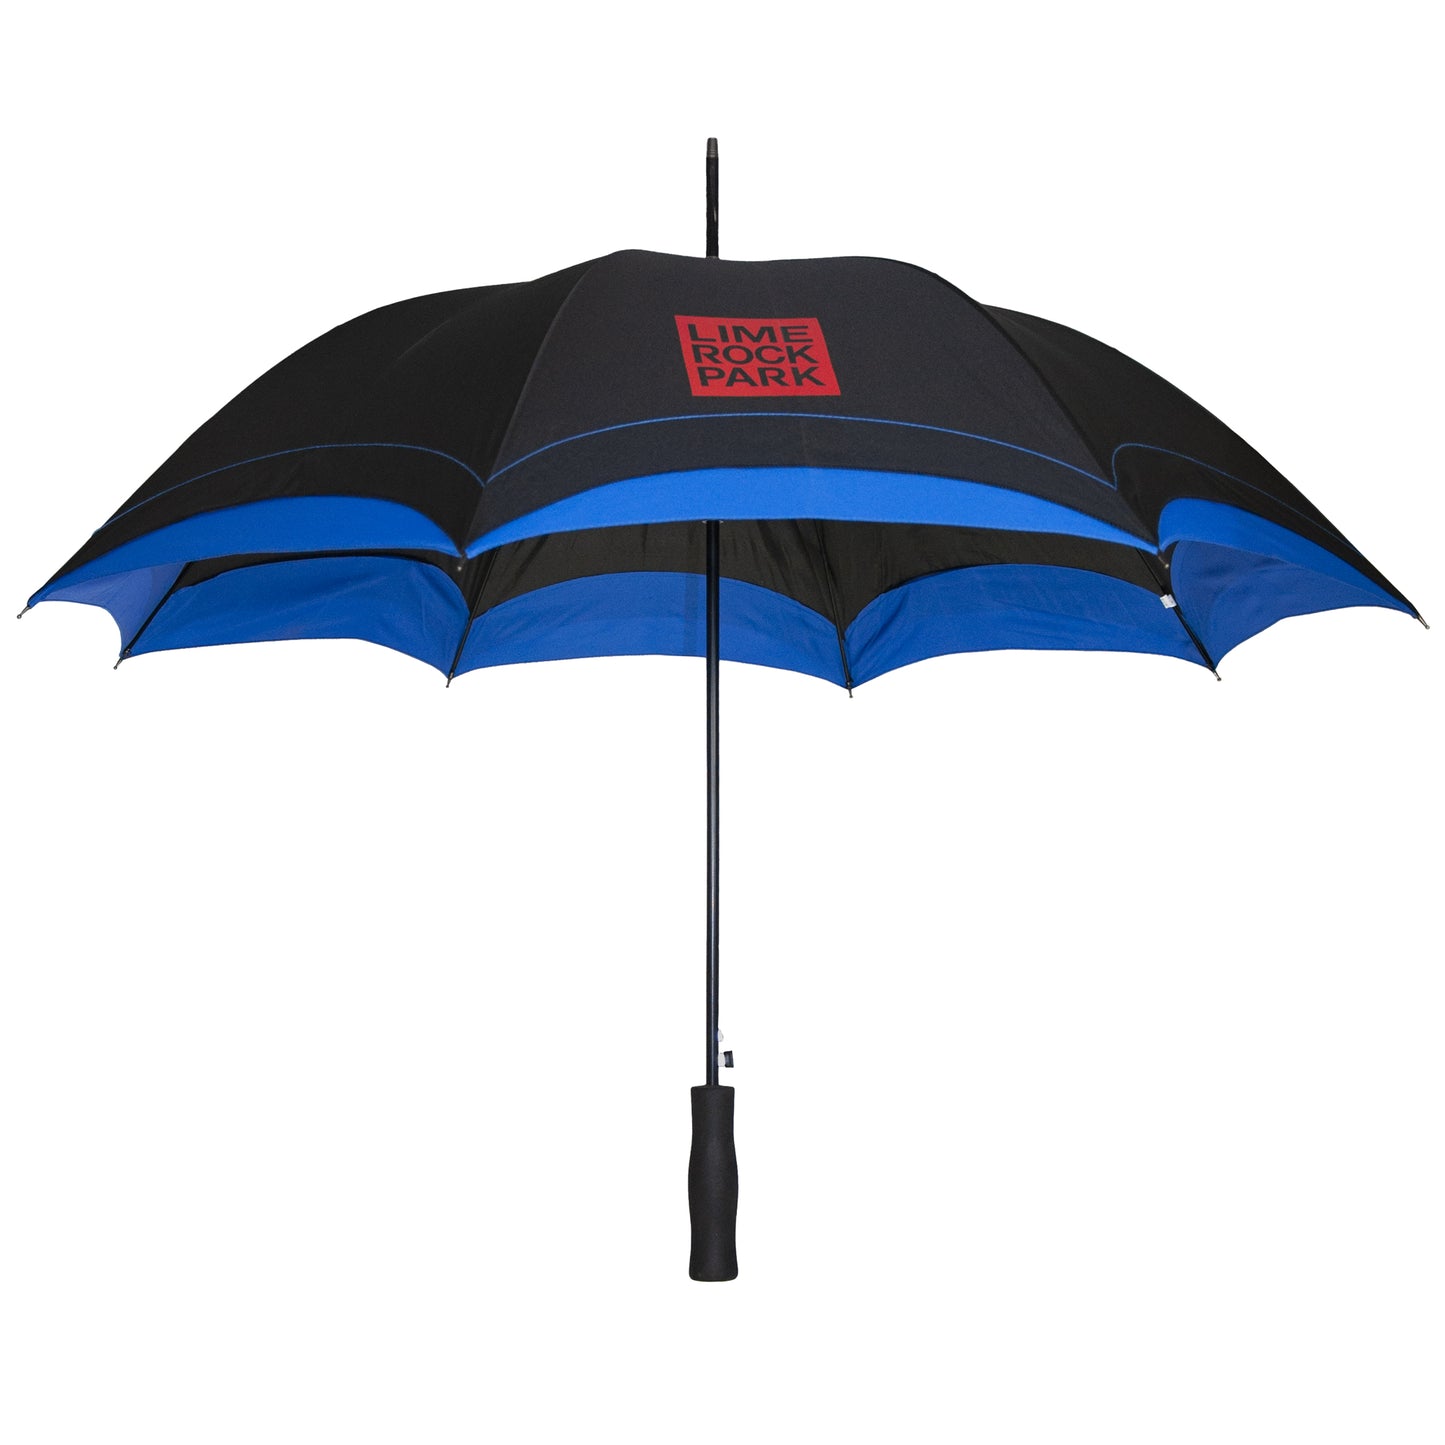 LRP Umbrella - Black/Royal